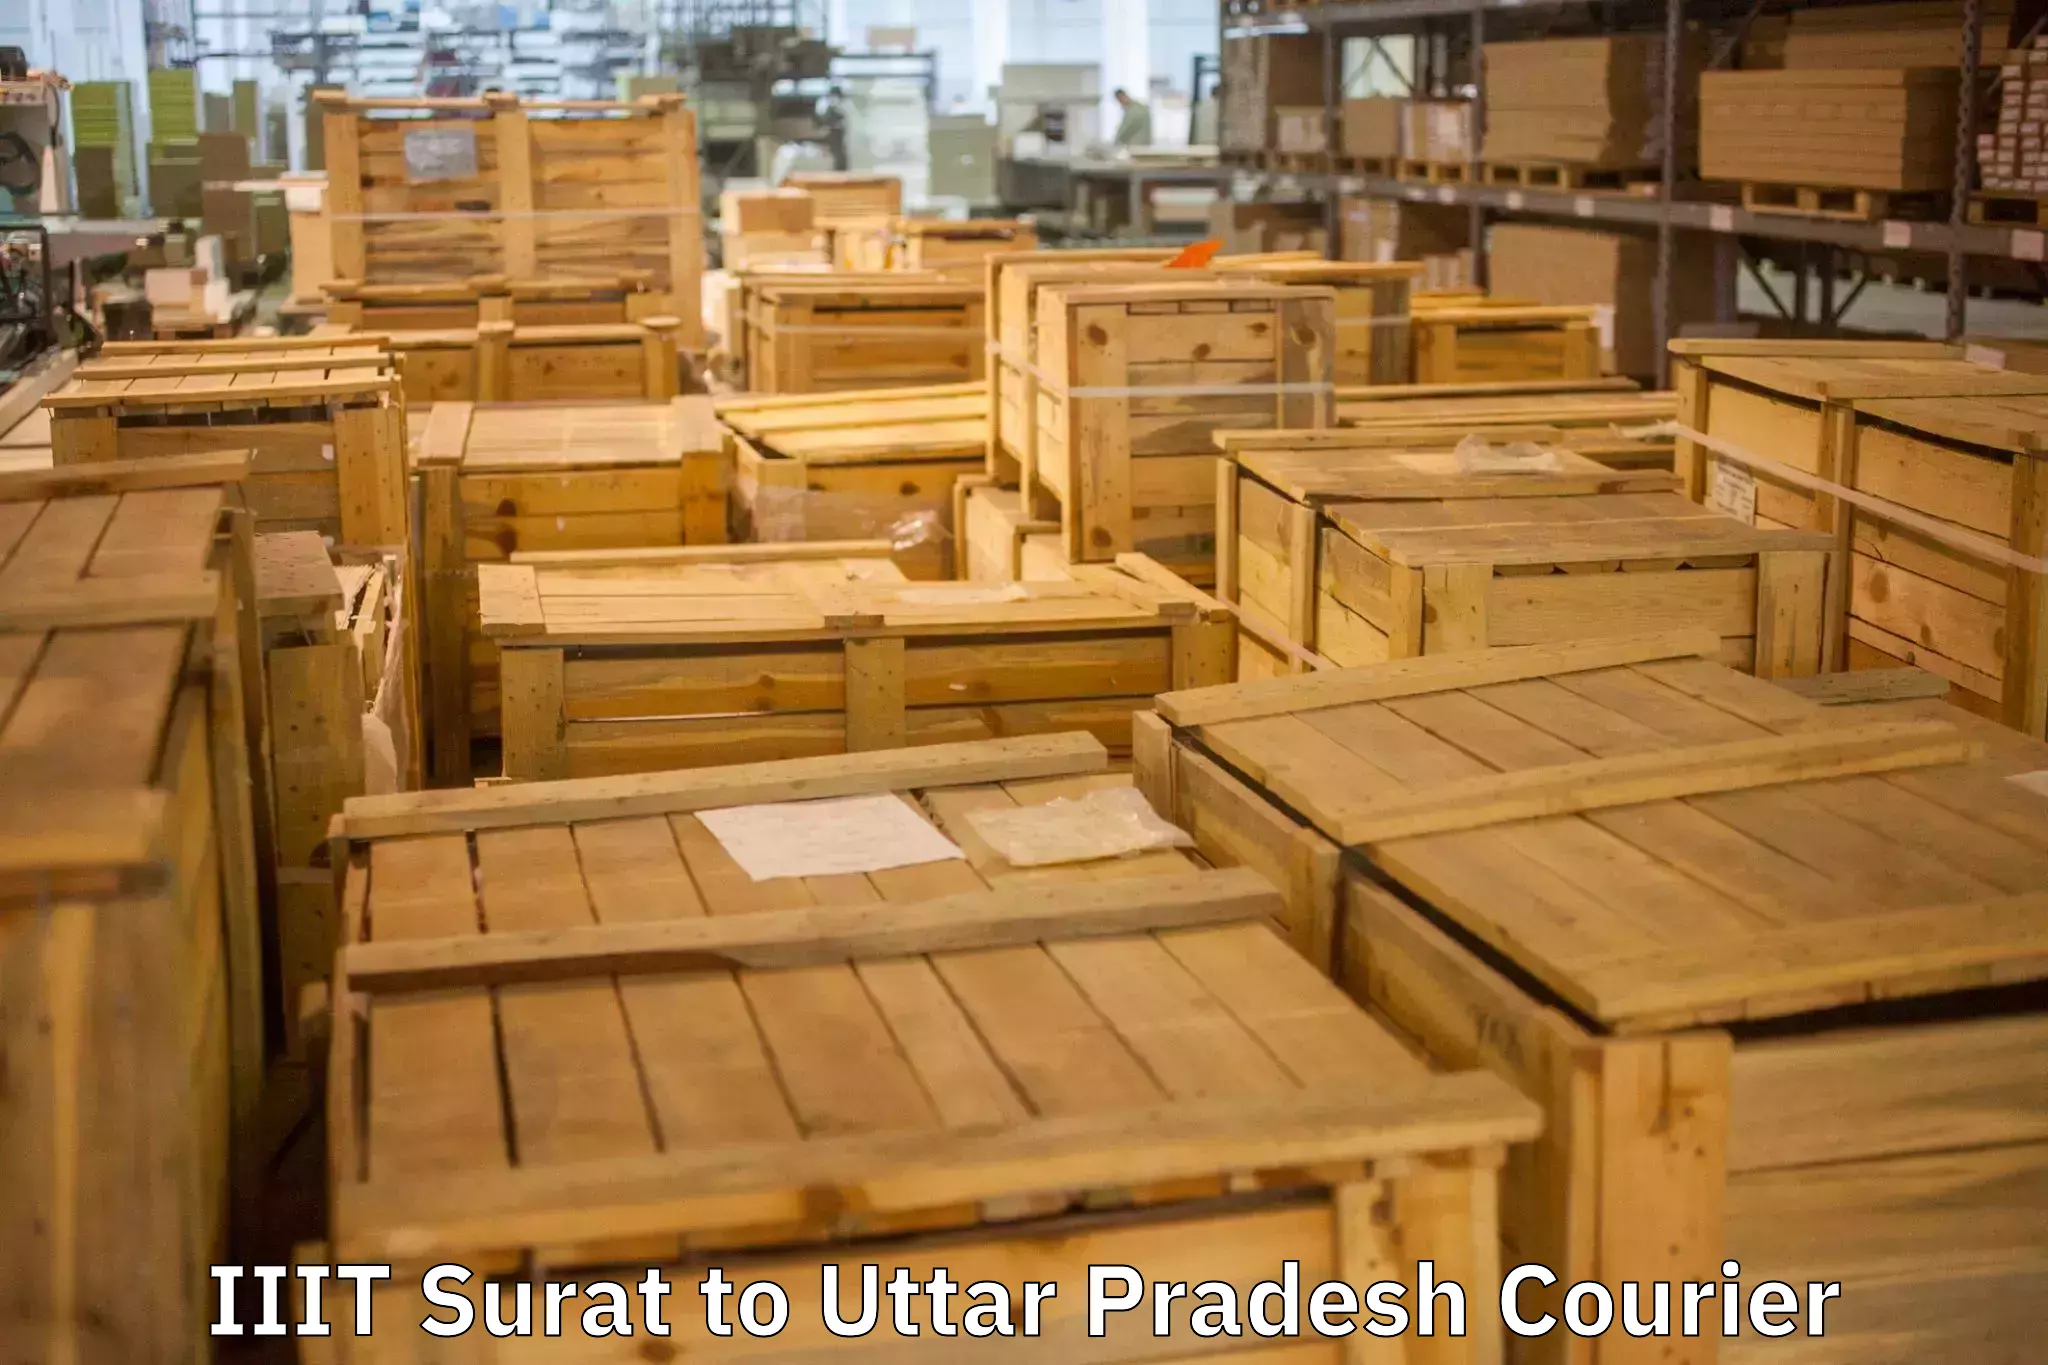 Reliable goods transport IIIT Surat to Agra